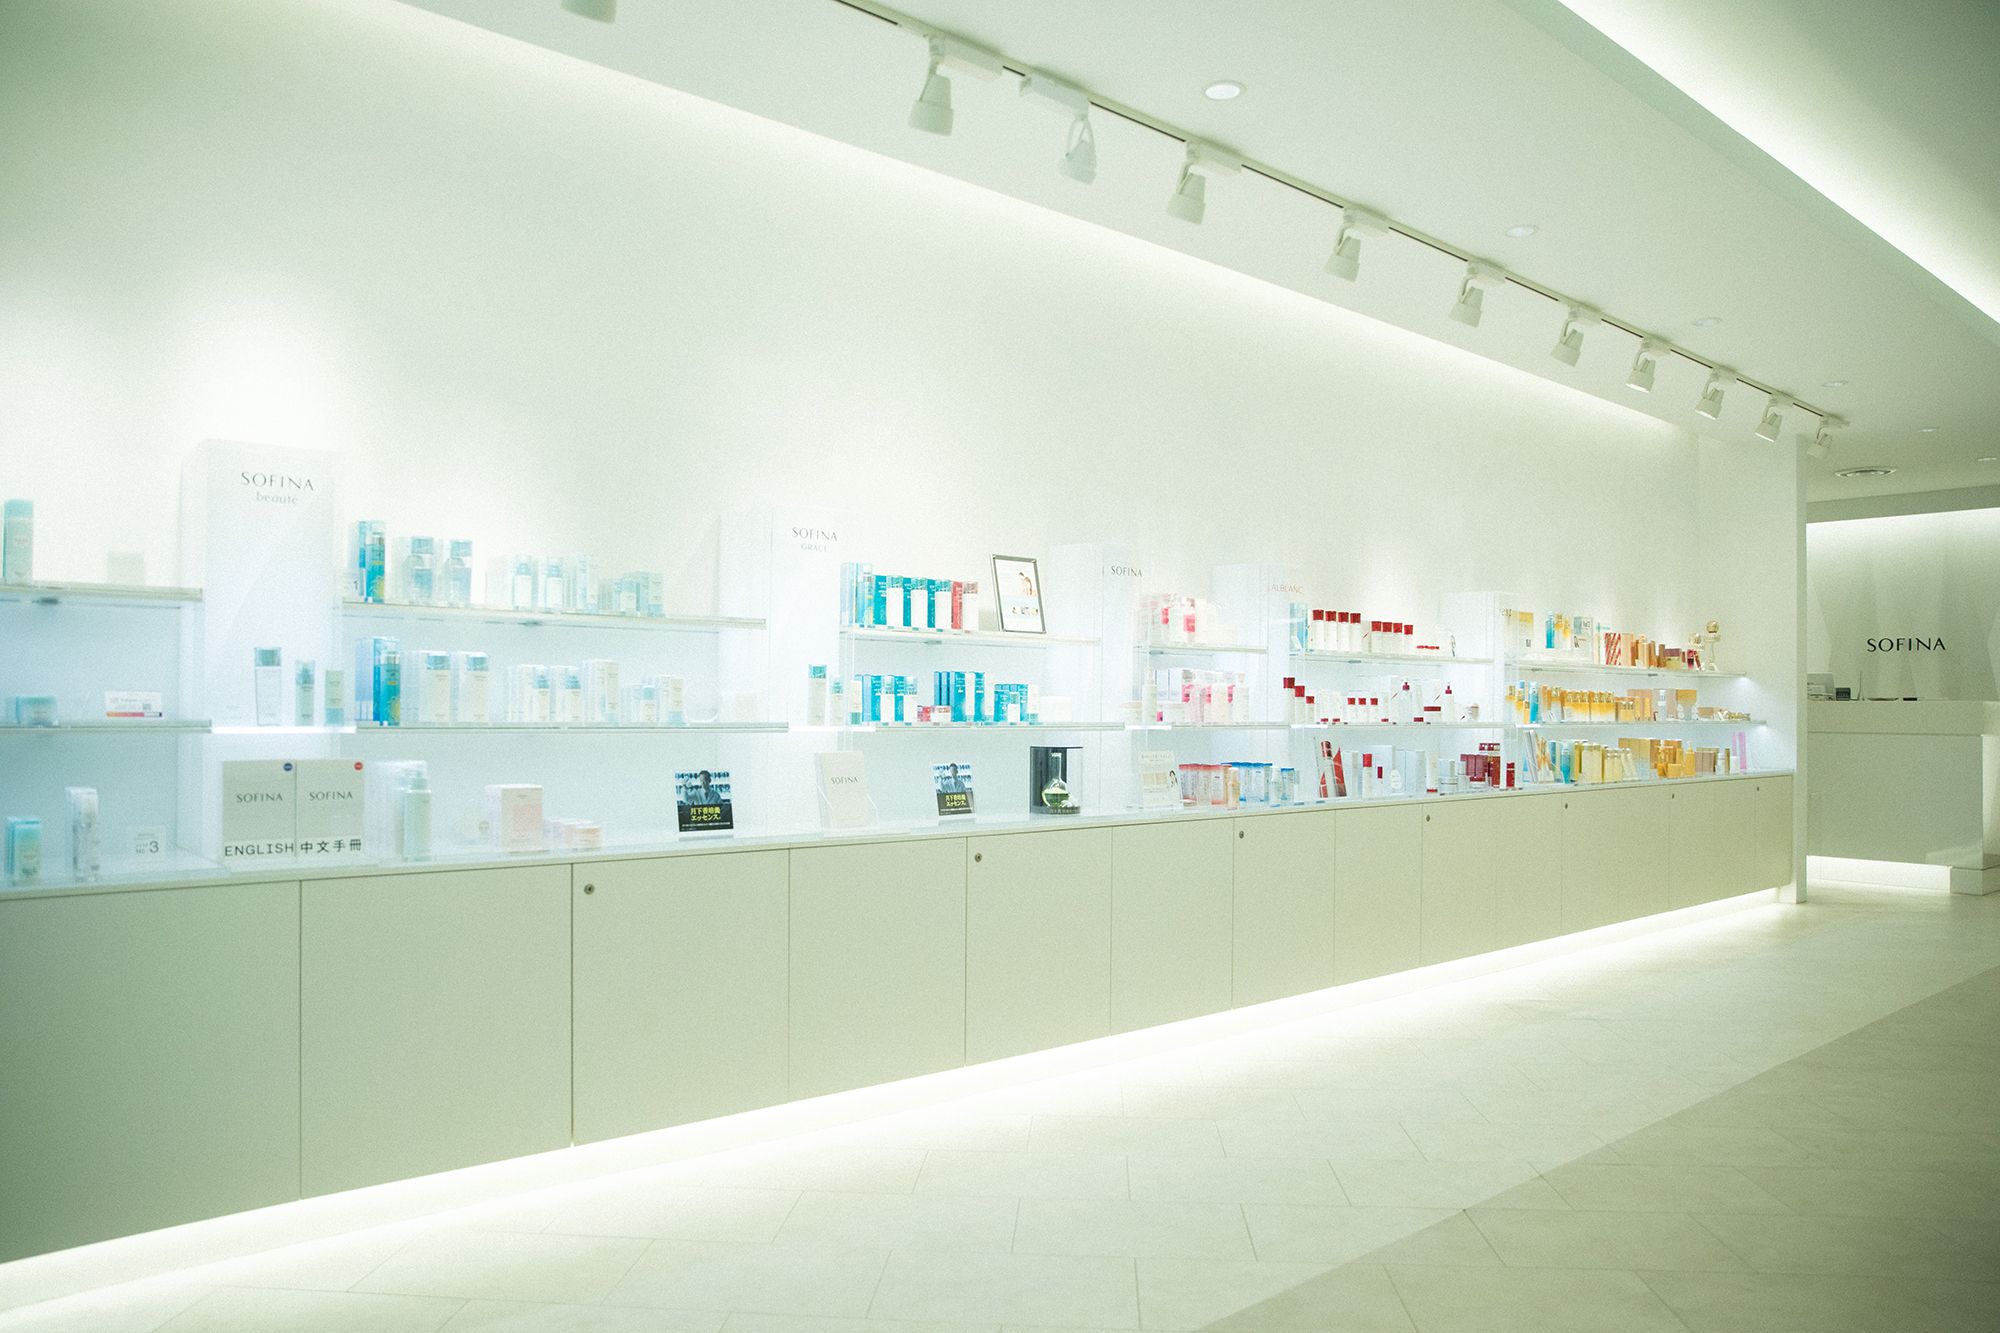 在银座还有可以采购SOFINA化妆品的店铺。在这里，肌肤的快速诊断无需预约。